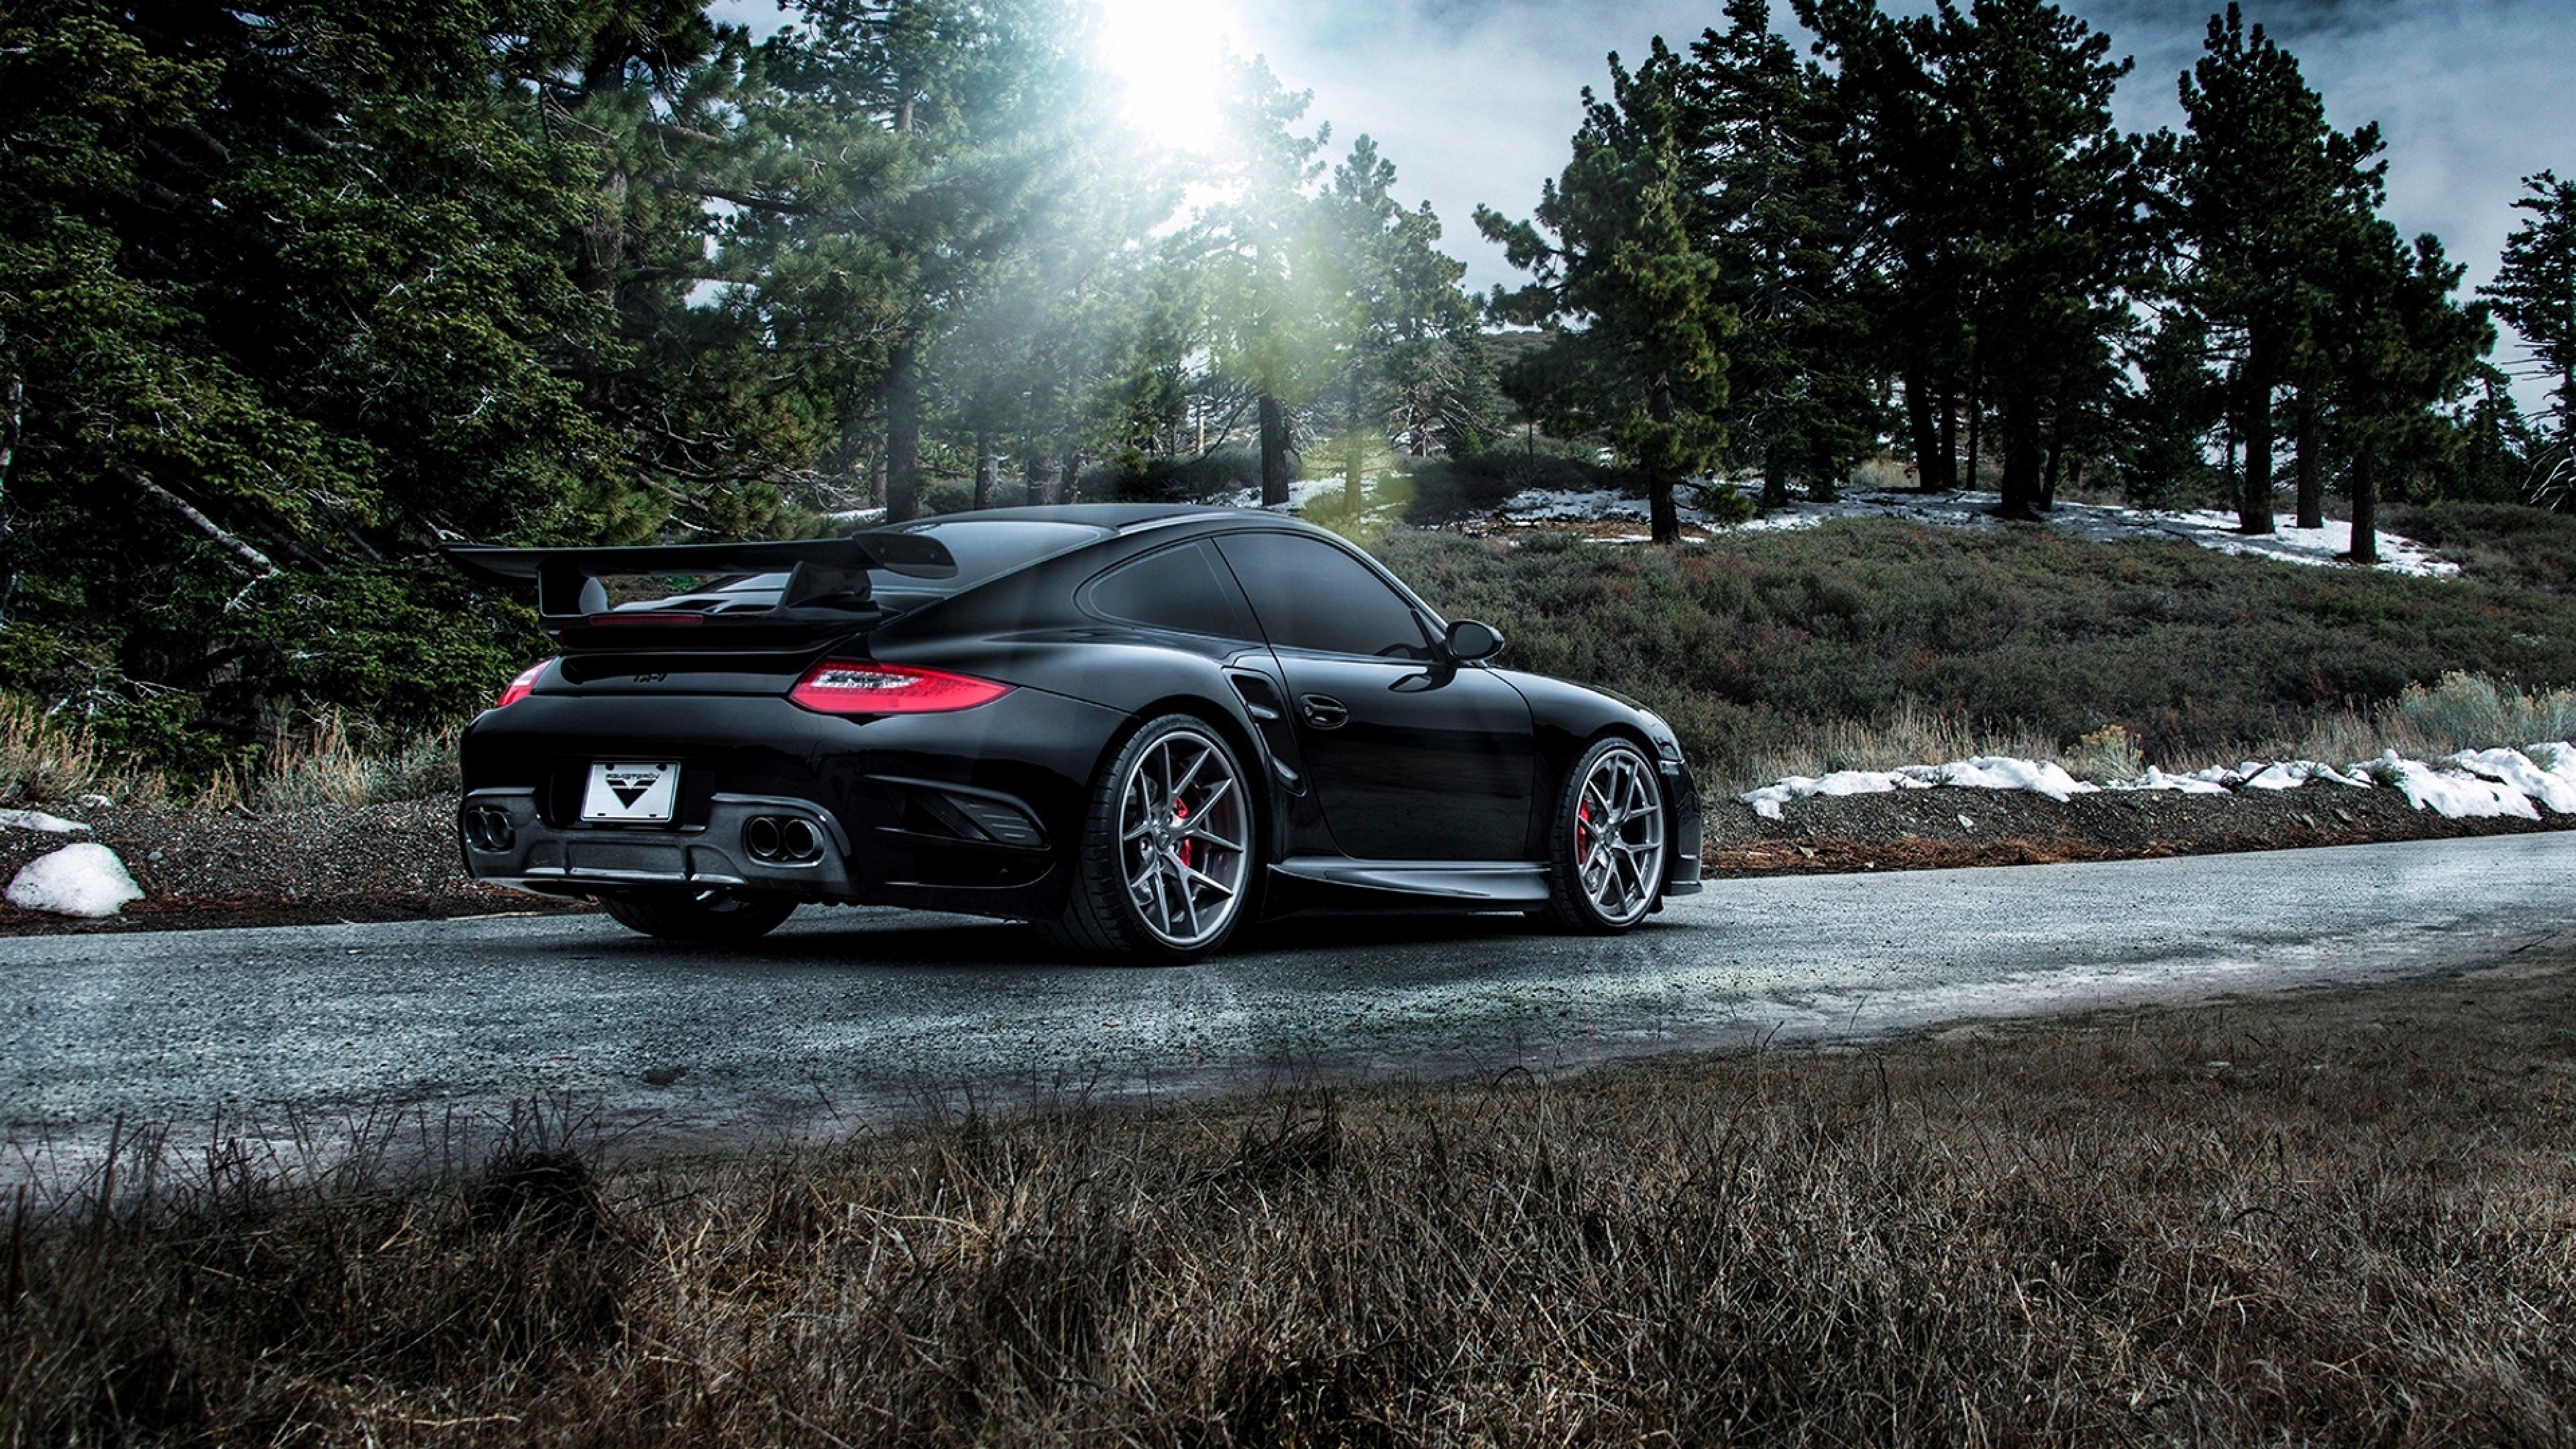 Porsche 911 Carrera Black, HD Cars, 4k Wallpapers, Images ...